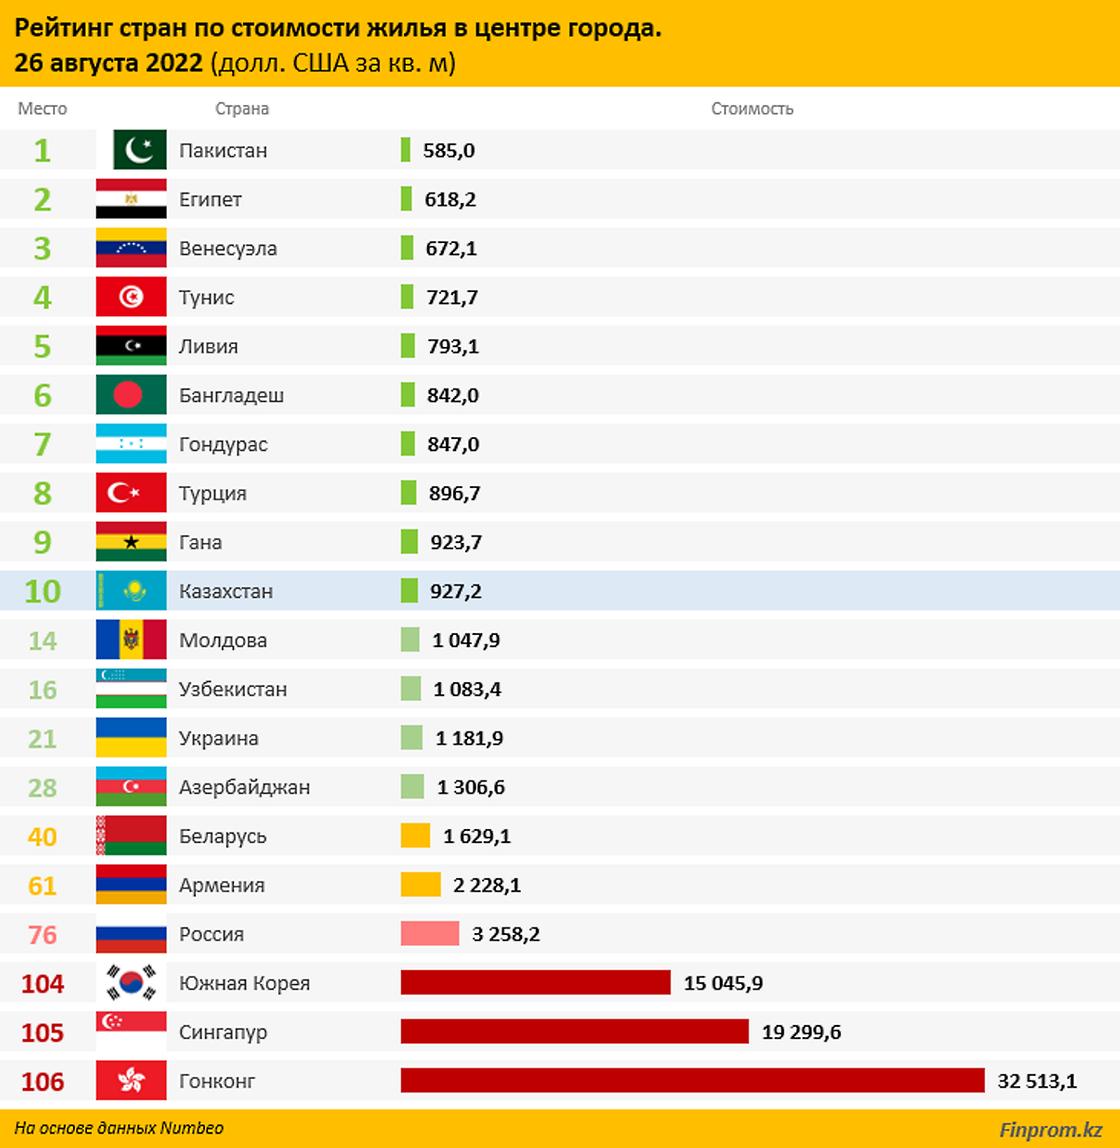 Казахстан занял 10 место в рейтинге стран по стоимости жилья